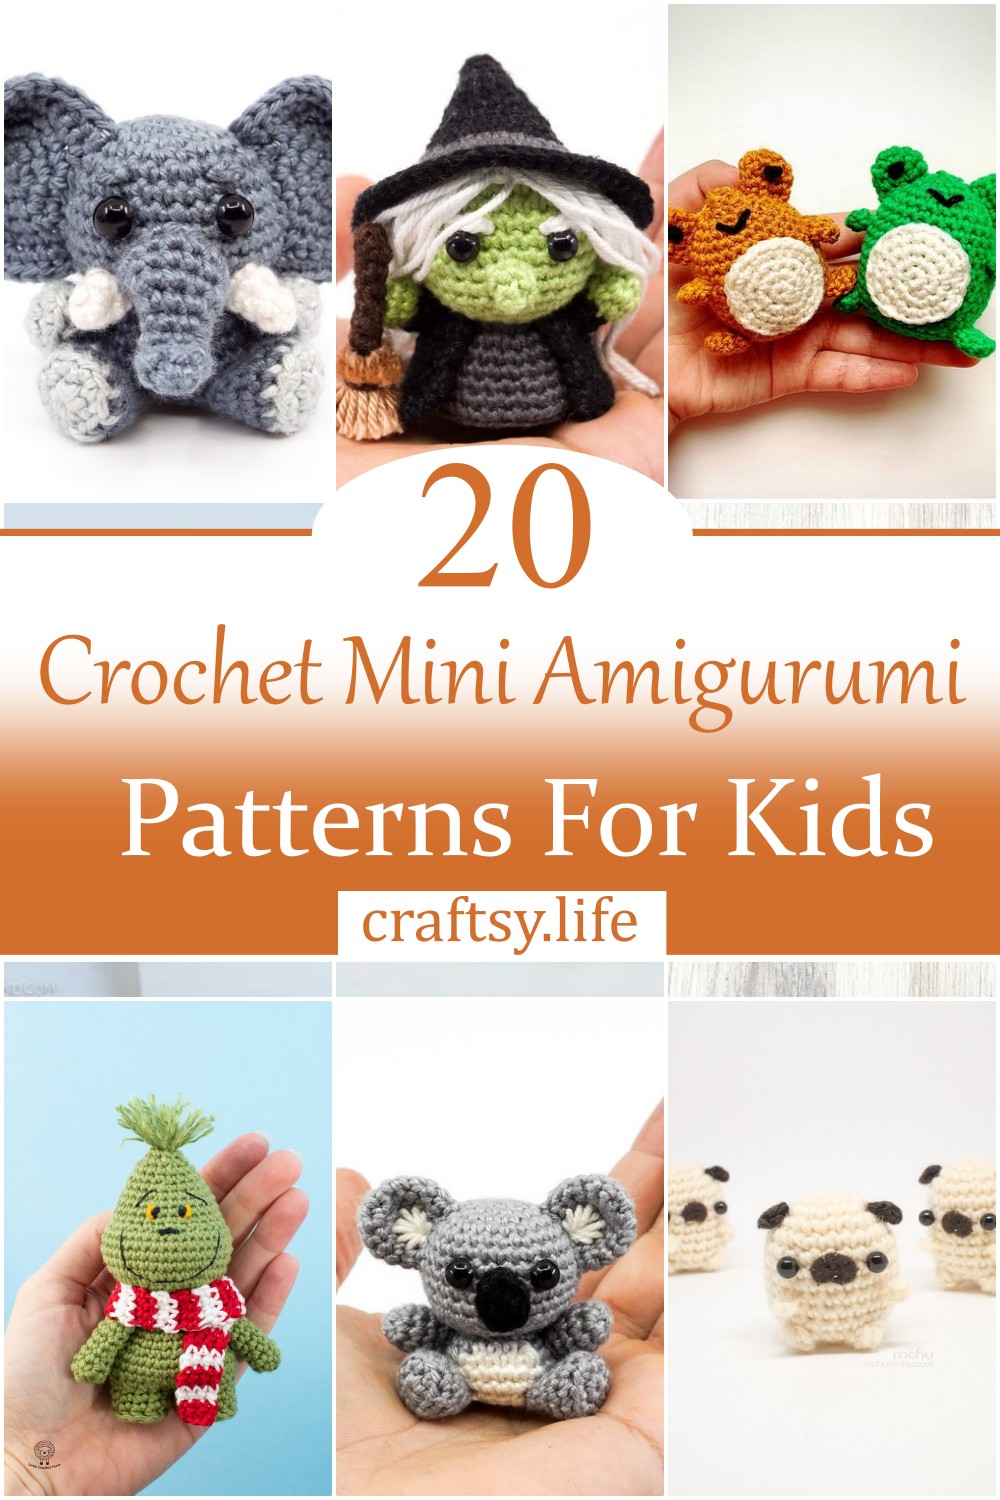 Crochet Mini Amigurumi Patterns For Kids